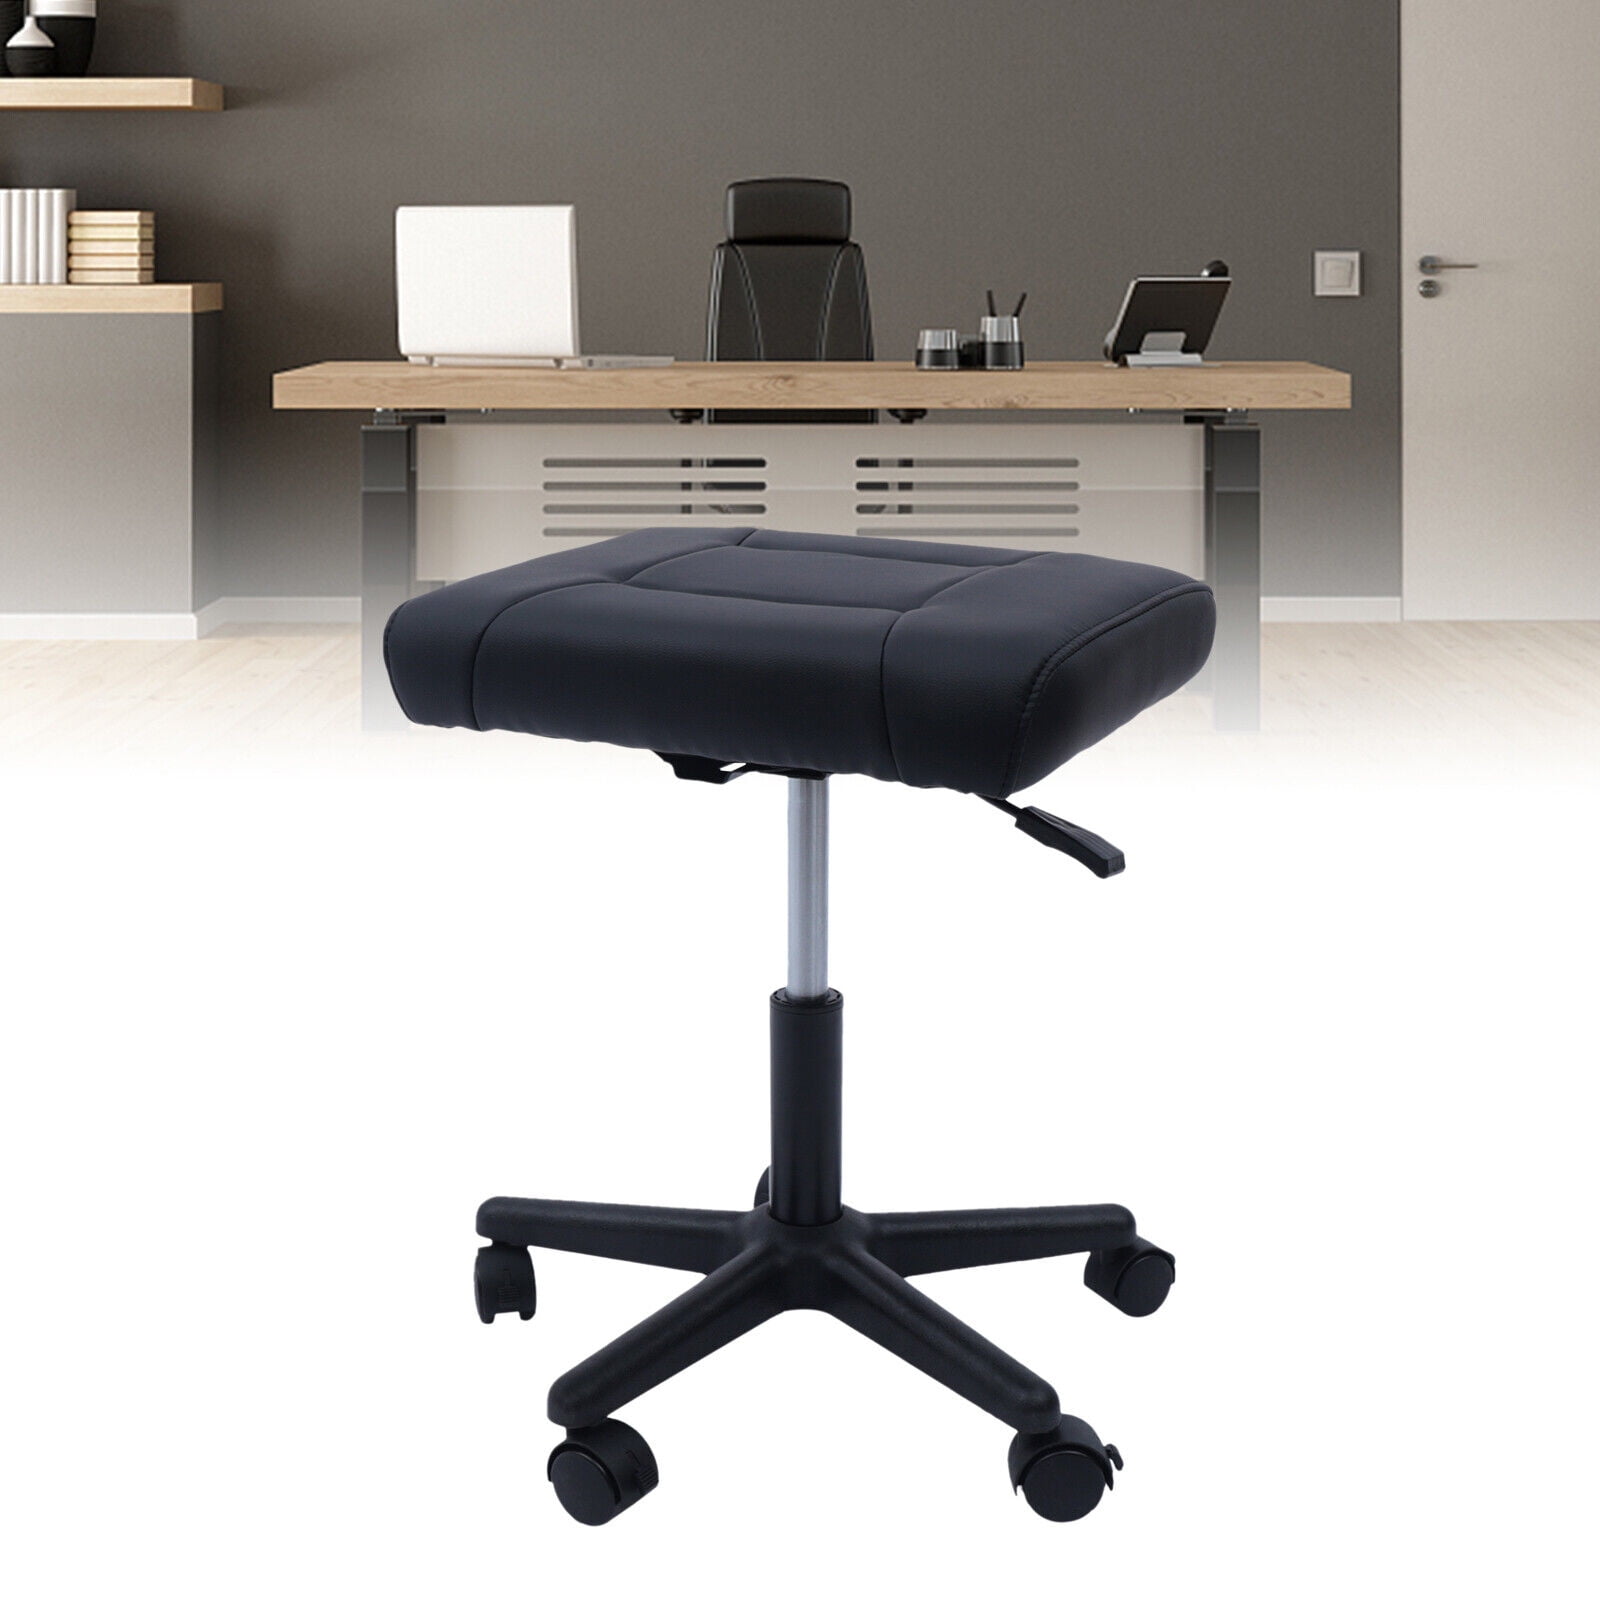 Adjustable Foot Rest Under Desk for Office Use, Foot Stool Under Desk